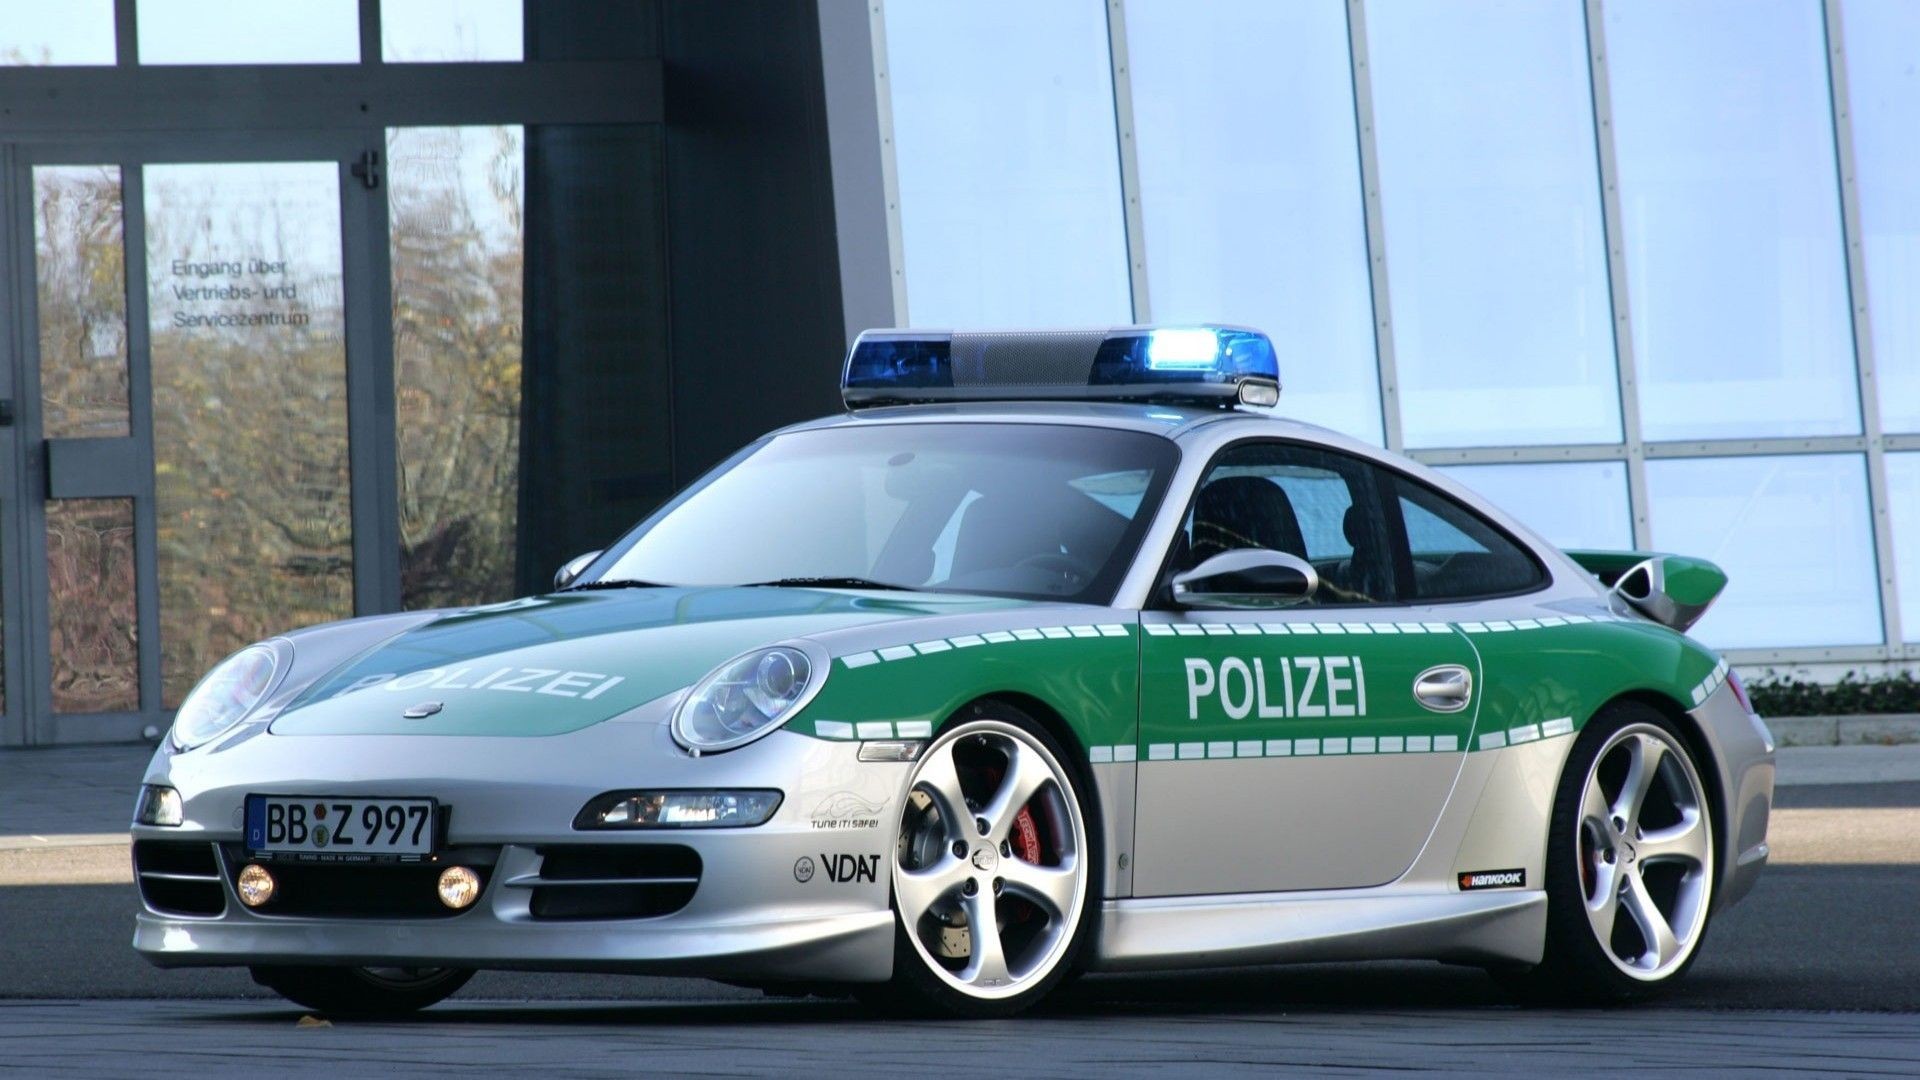 General 1920x1080 car Porsche Porsche 911 German cars police police cars Porsche 997 vehicle numbers Germany